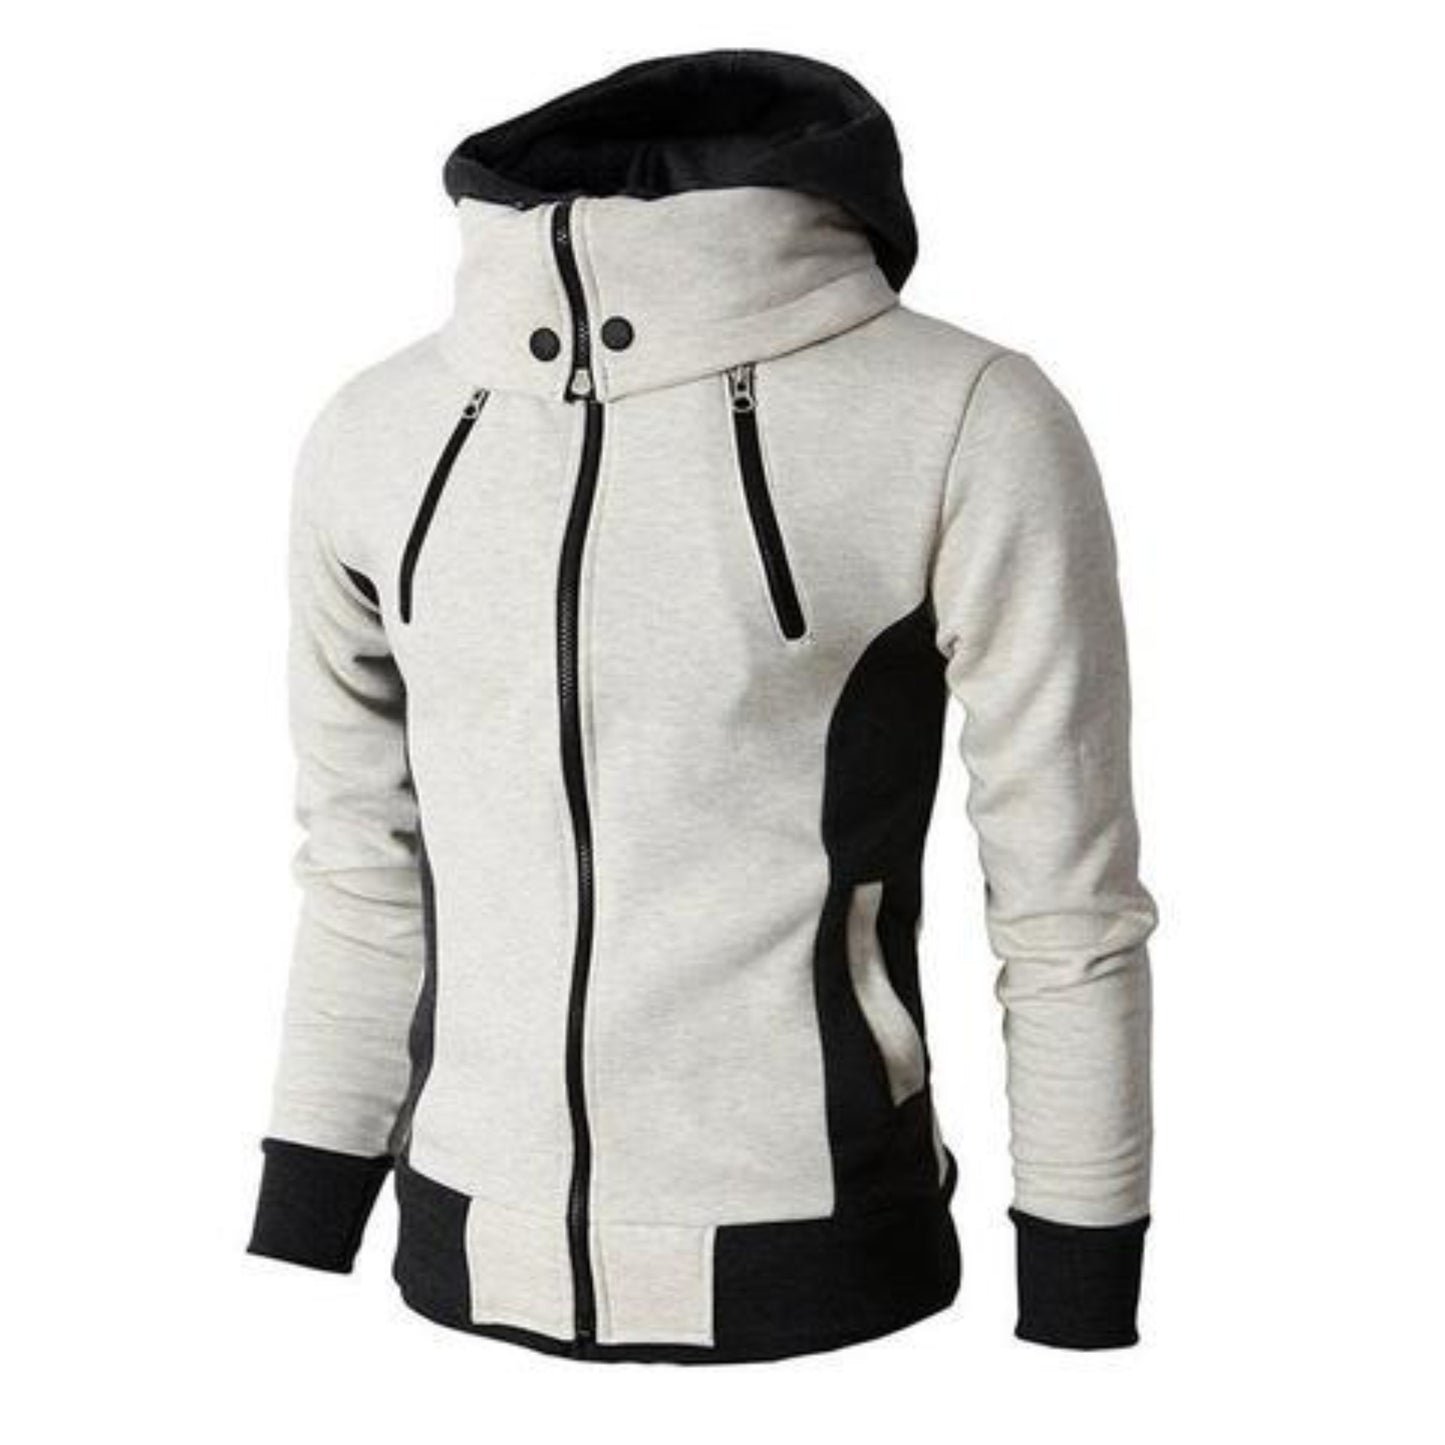 Unisex Jacket white color 